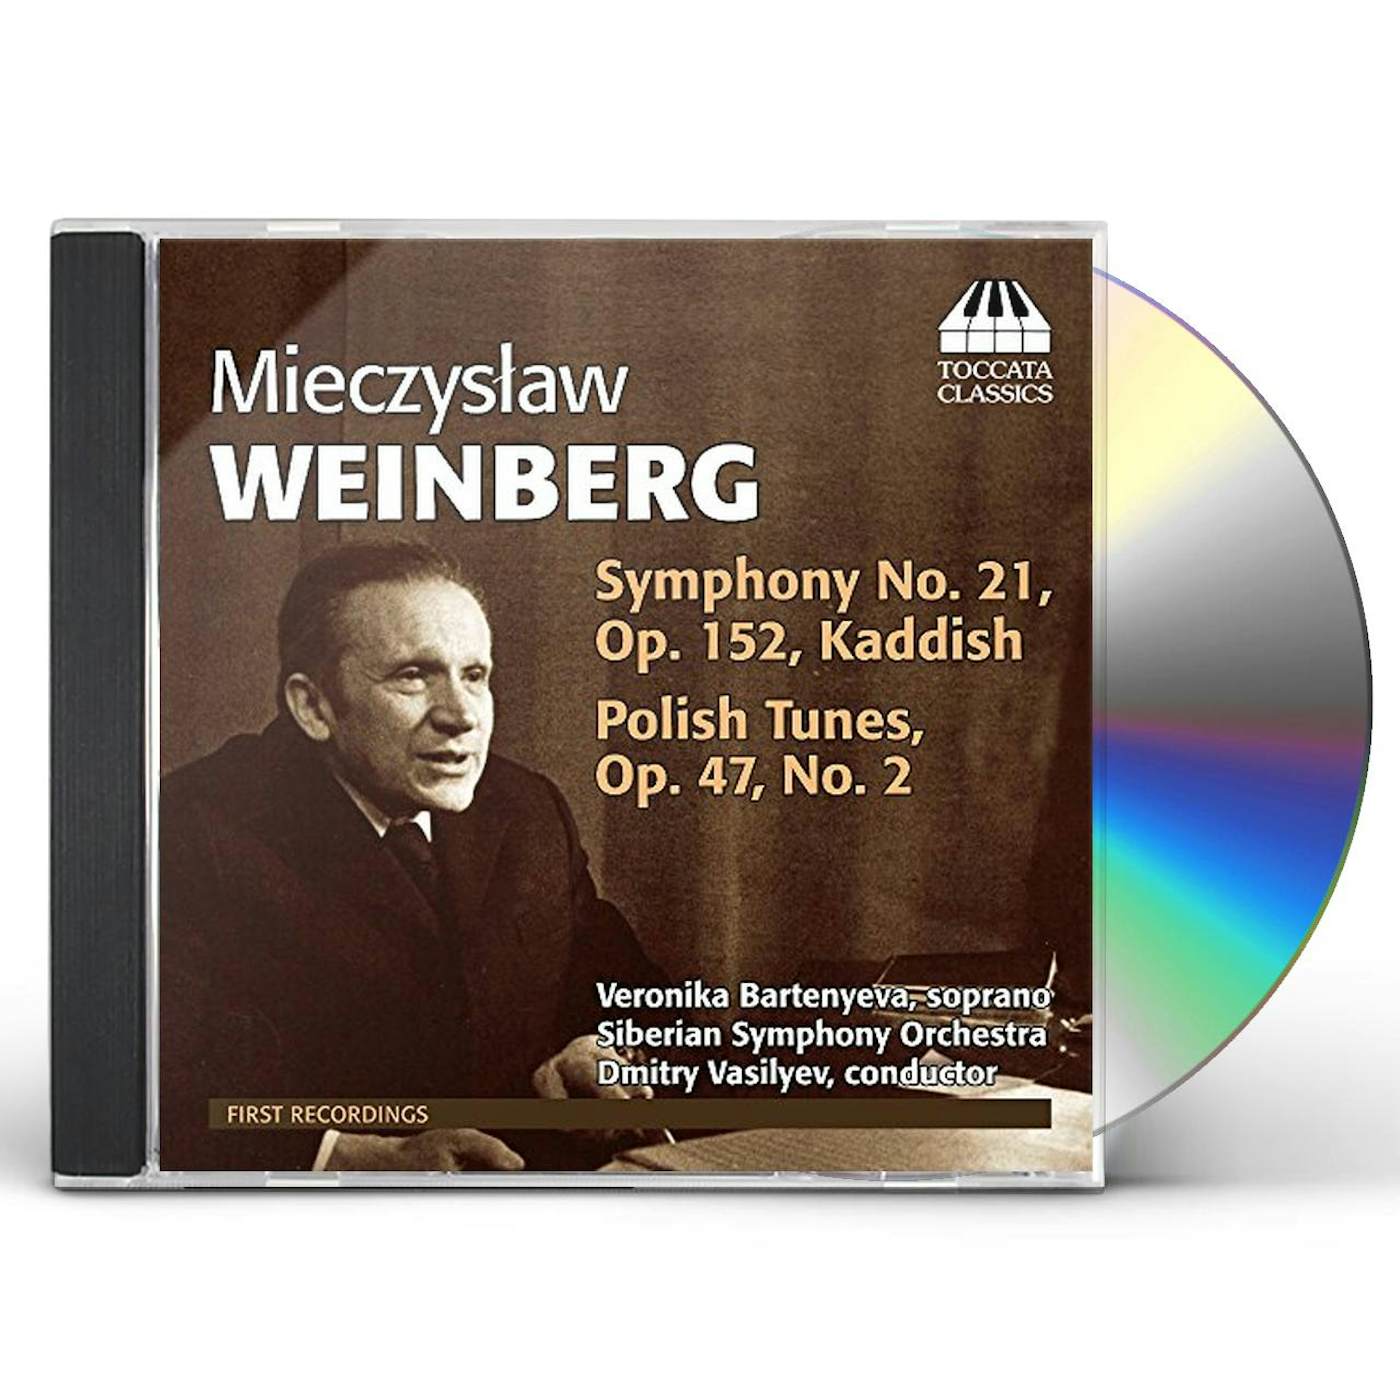 Weinberg SYM 21 KADDISH & POLISH TUNES CD